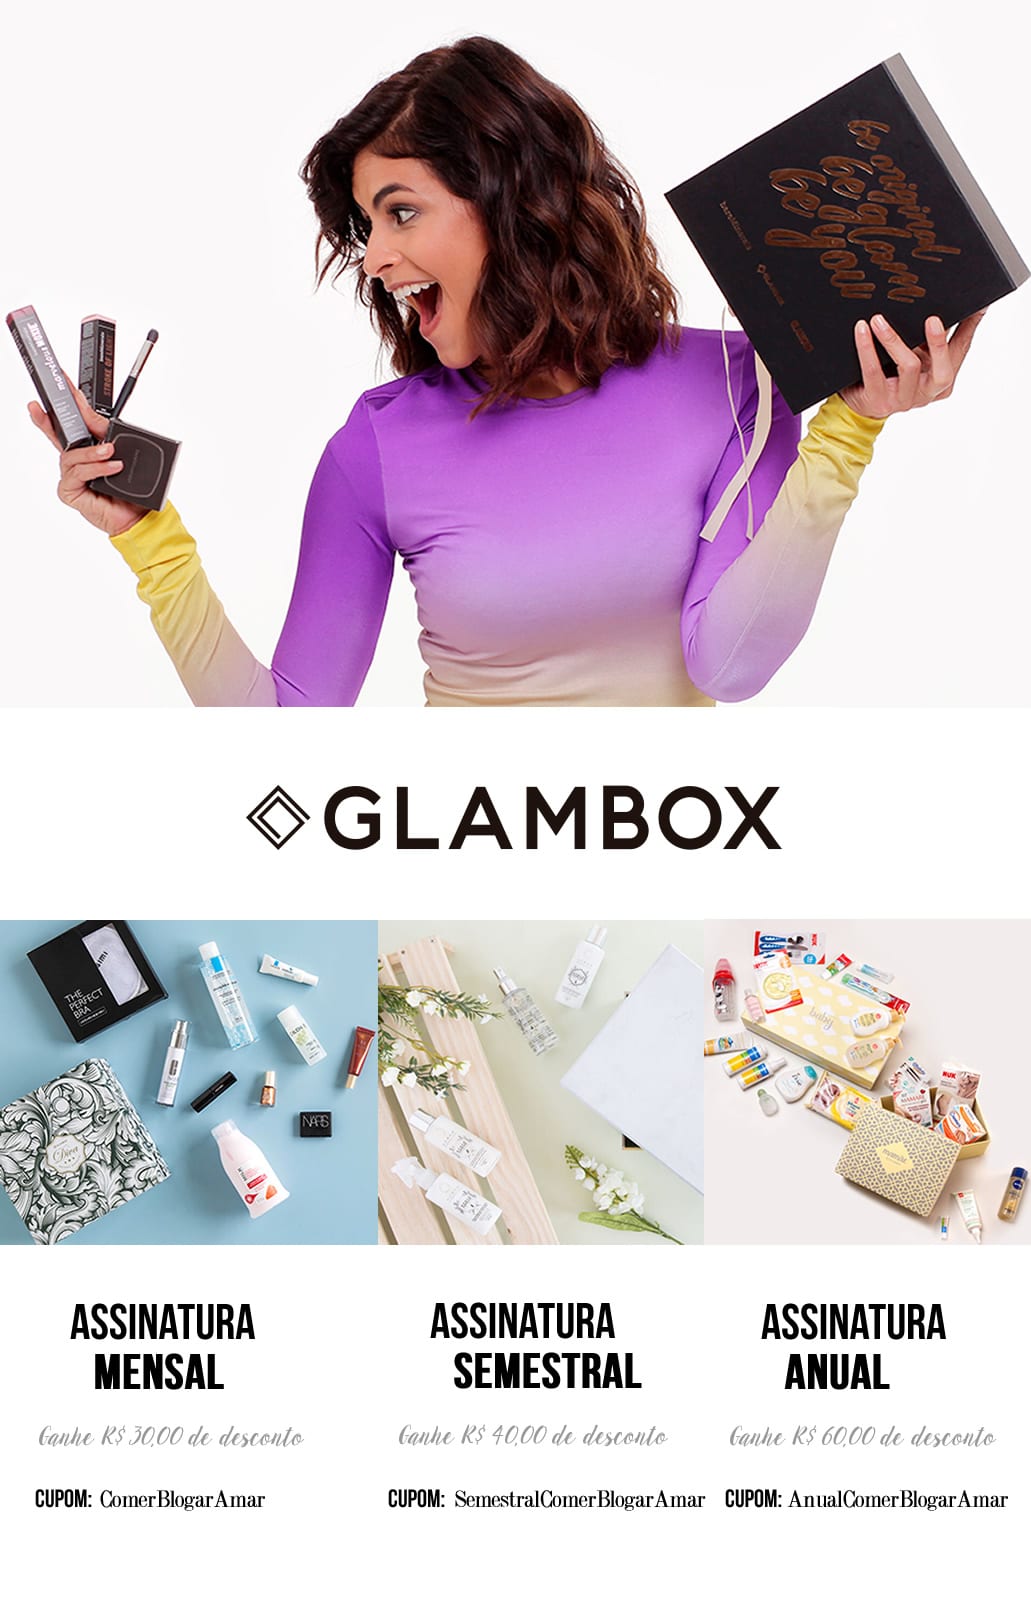 Cupom de Desconto Glambox março 2017, como conseguir cupom de desconto glambox, Cupom de Desconto, Glambox Joy, #GlamboxJoy